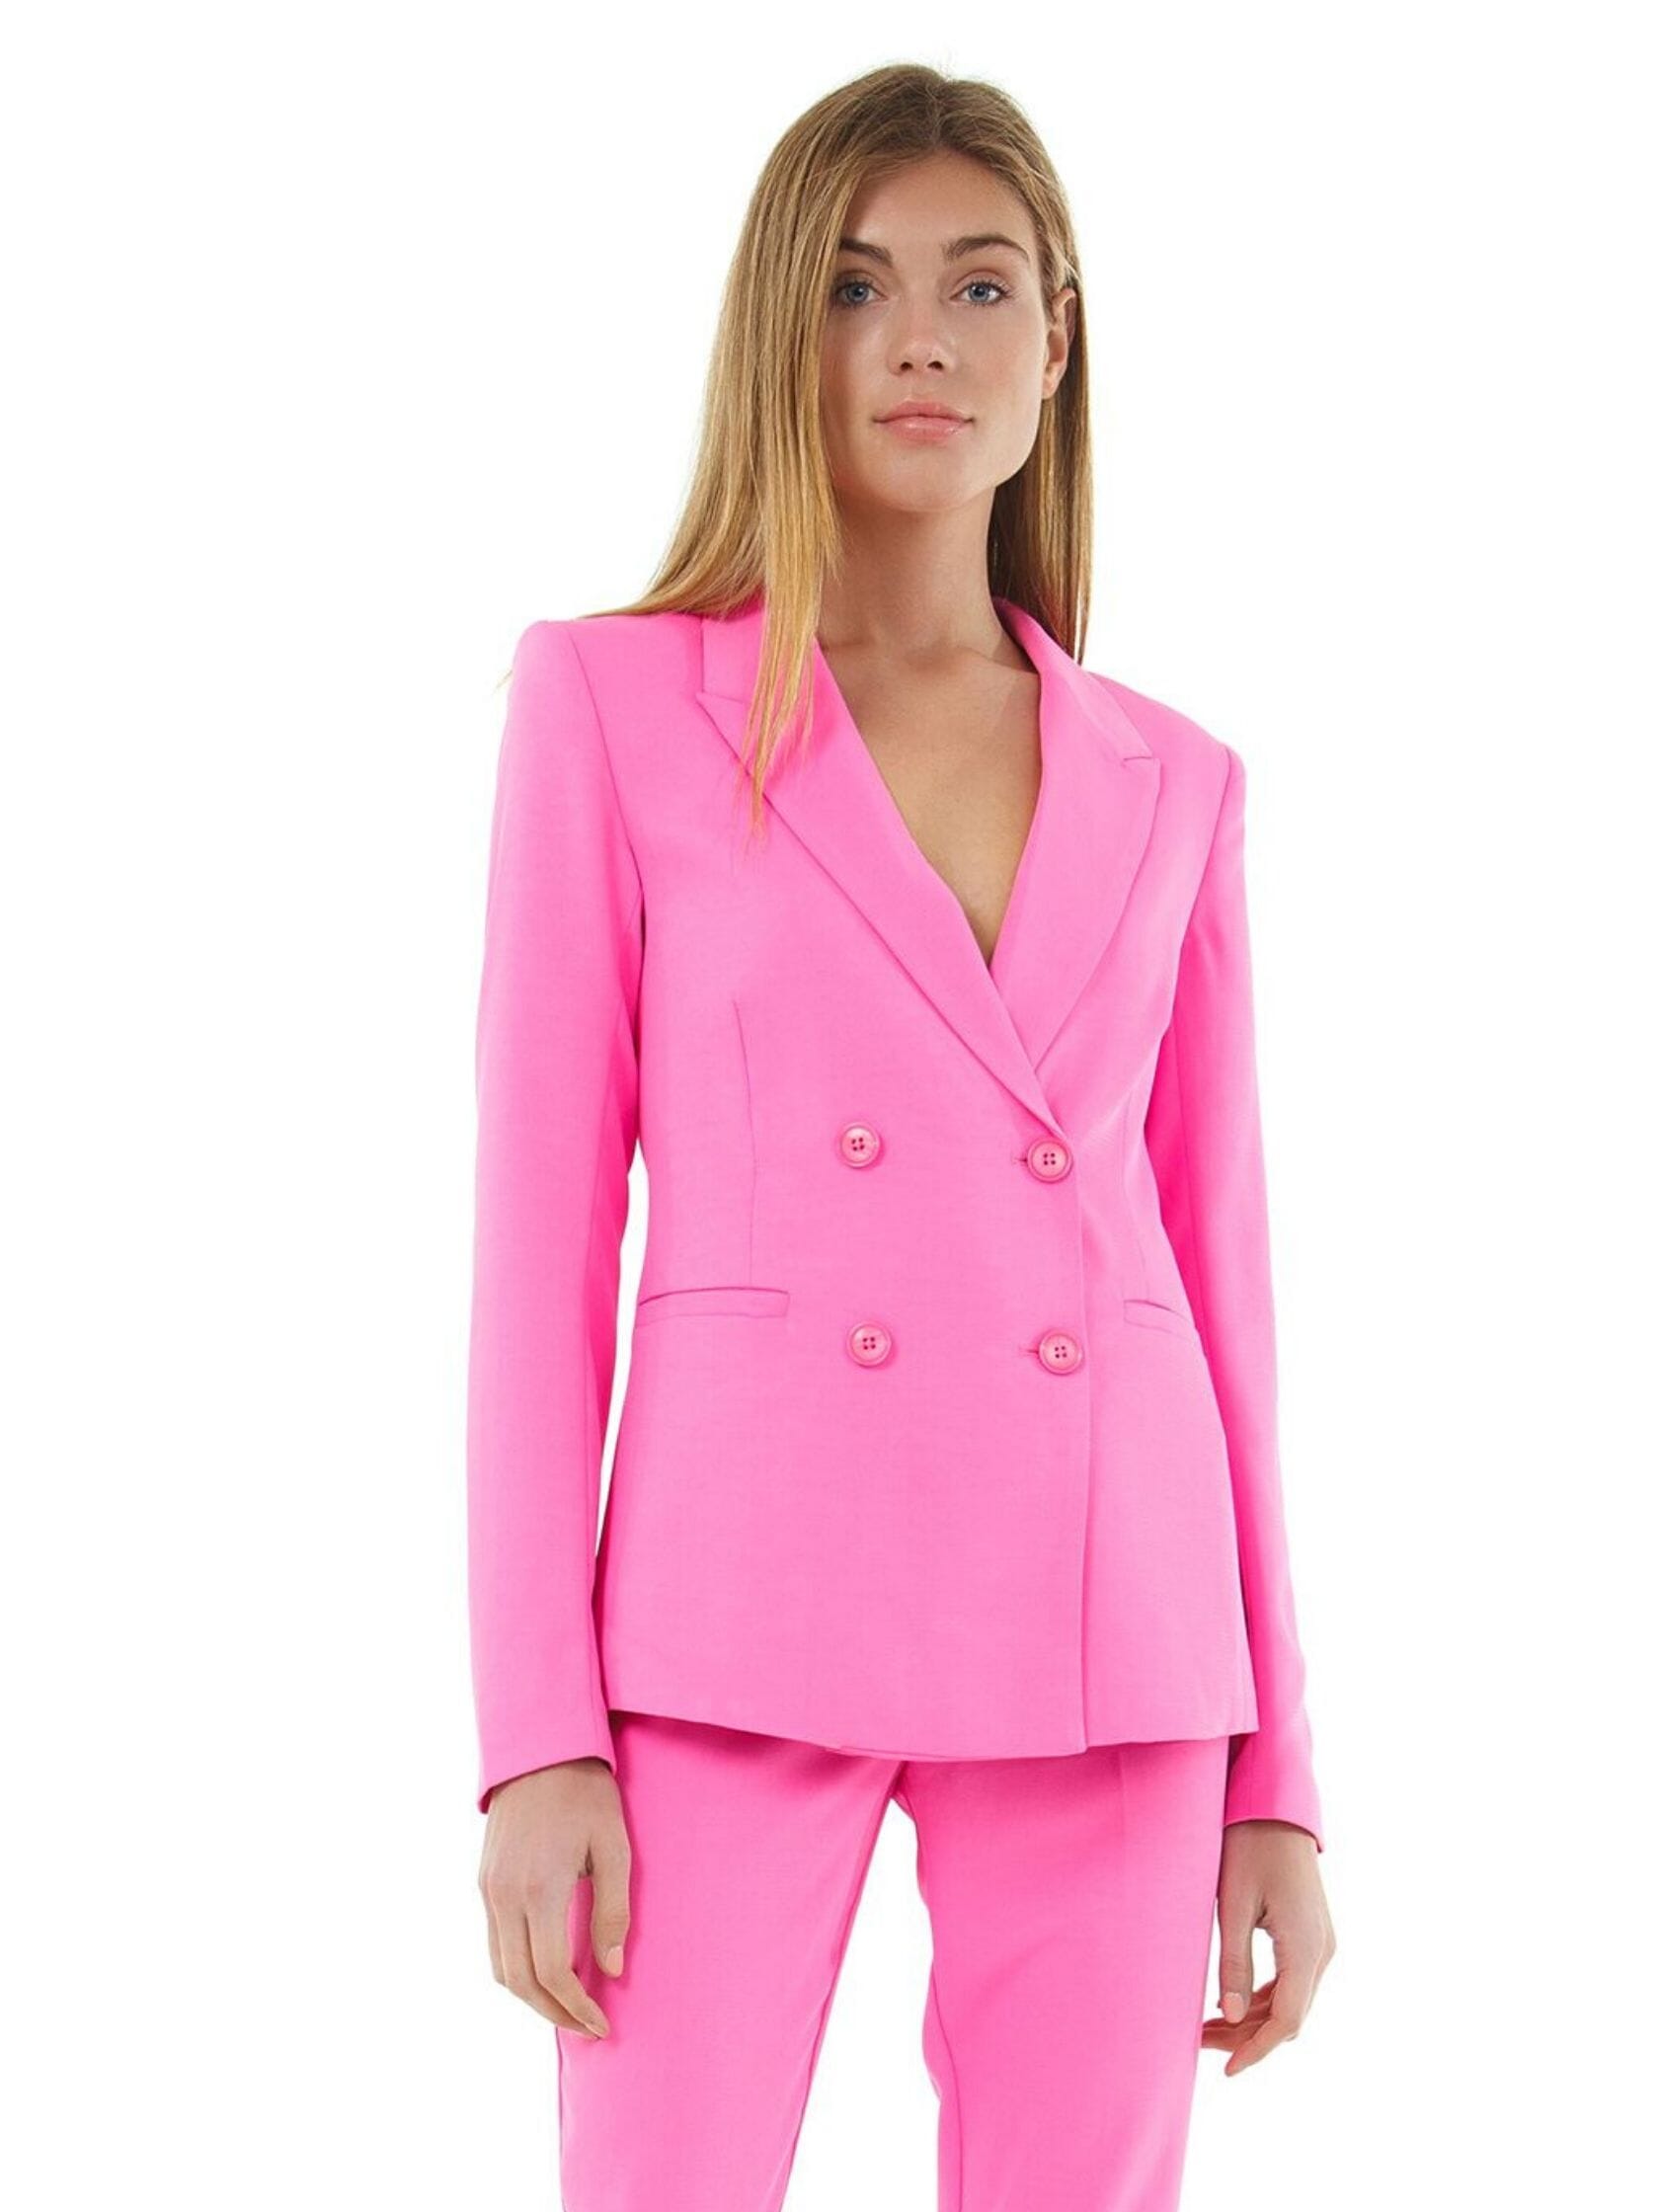 Bardot | Parisienne Blazer in Pink Pop | FashionPass